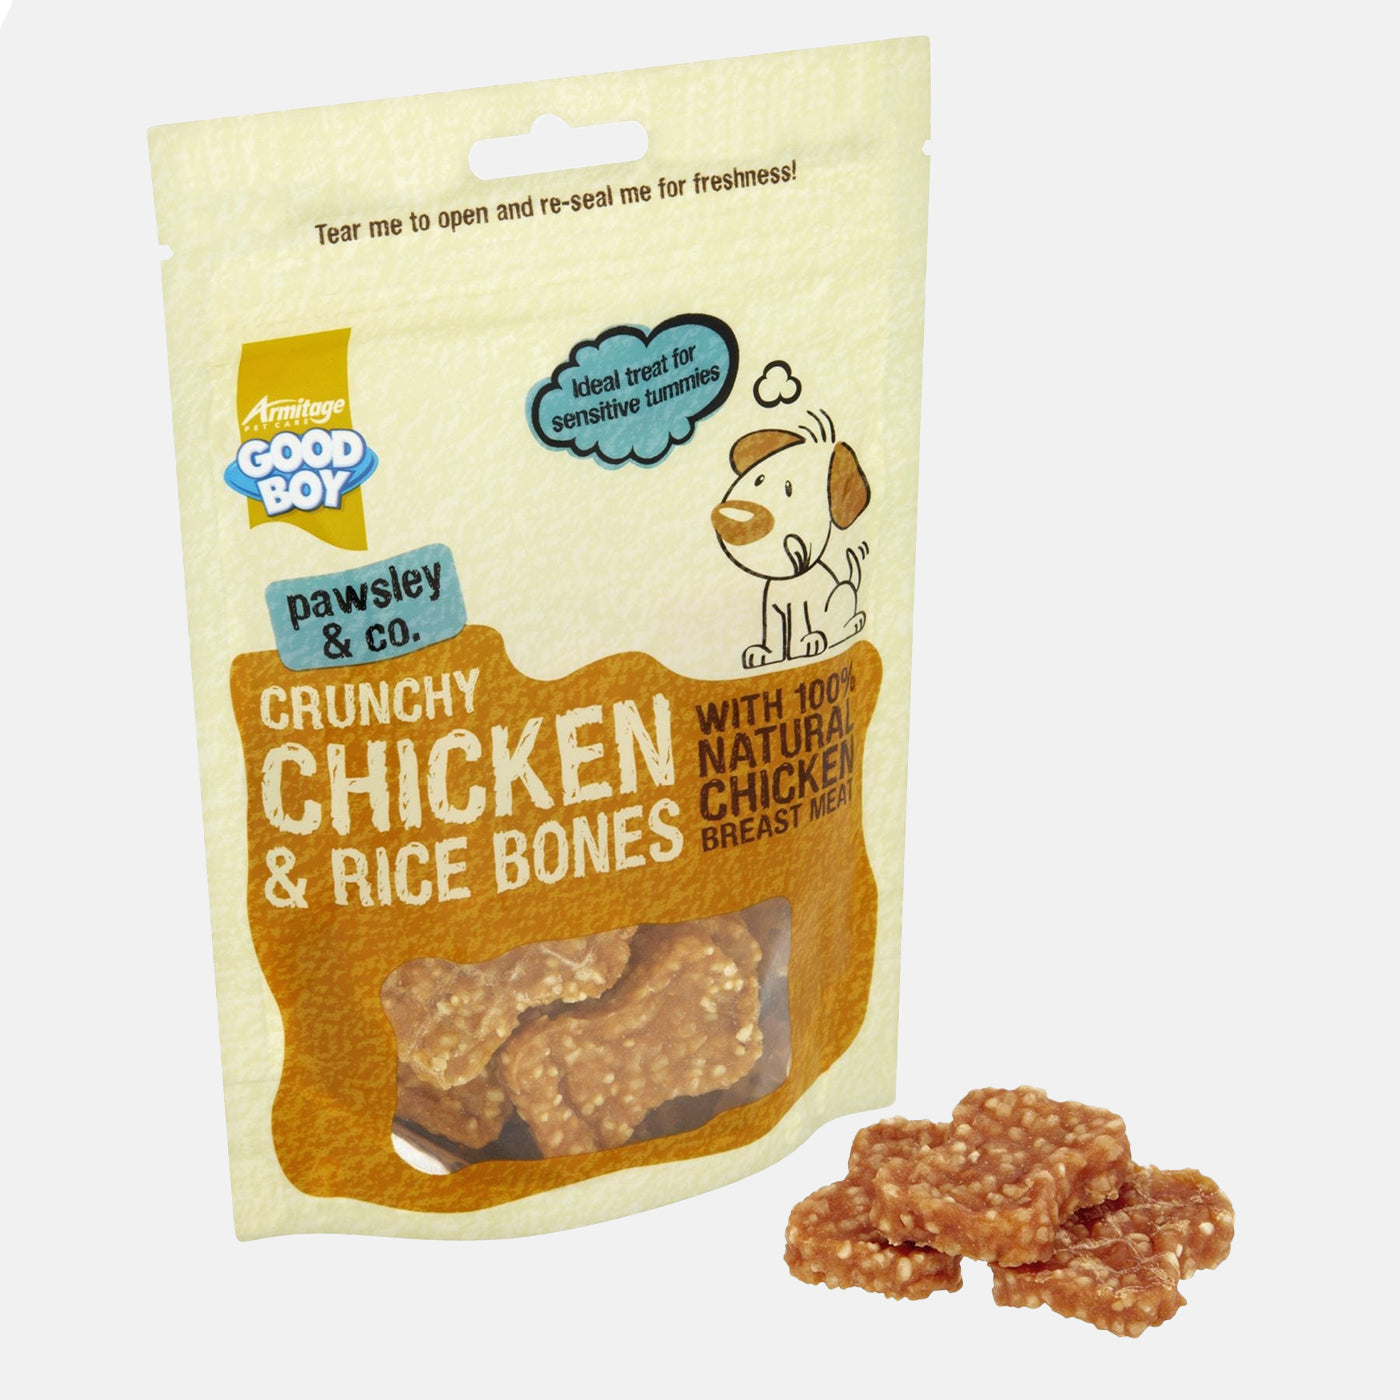 Good Boy Crunchy Chicken & Rice Bones